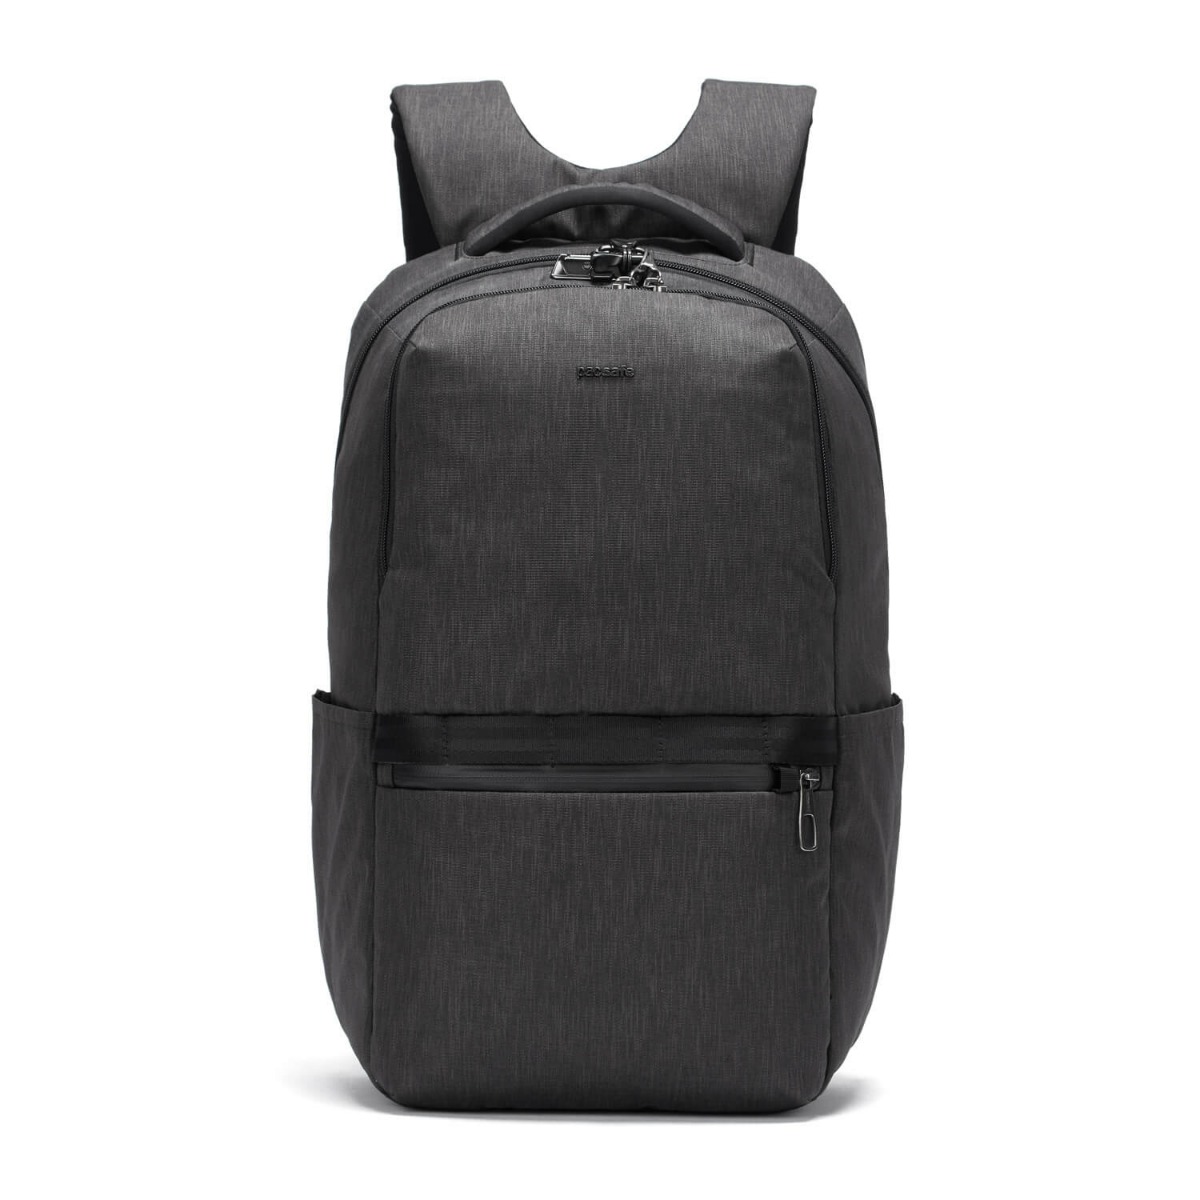 Рюкзак для ноутбука Pacsafe Metrosafe X 25 ECO, серый, 24 л.